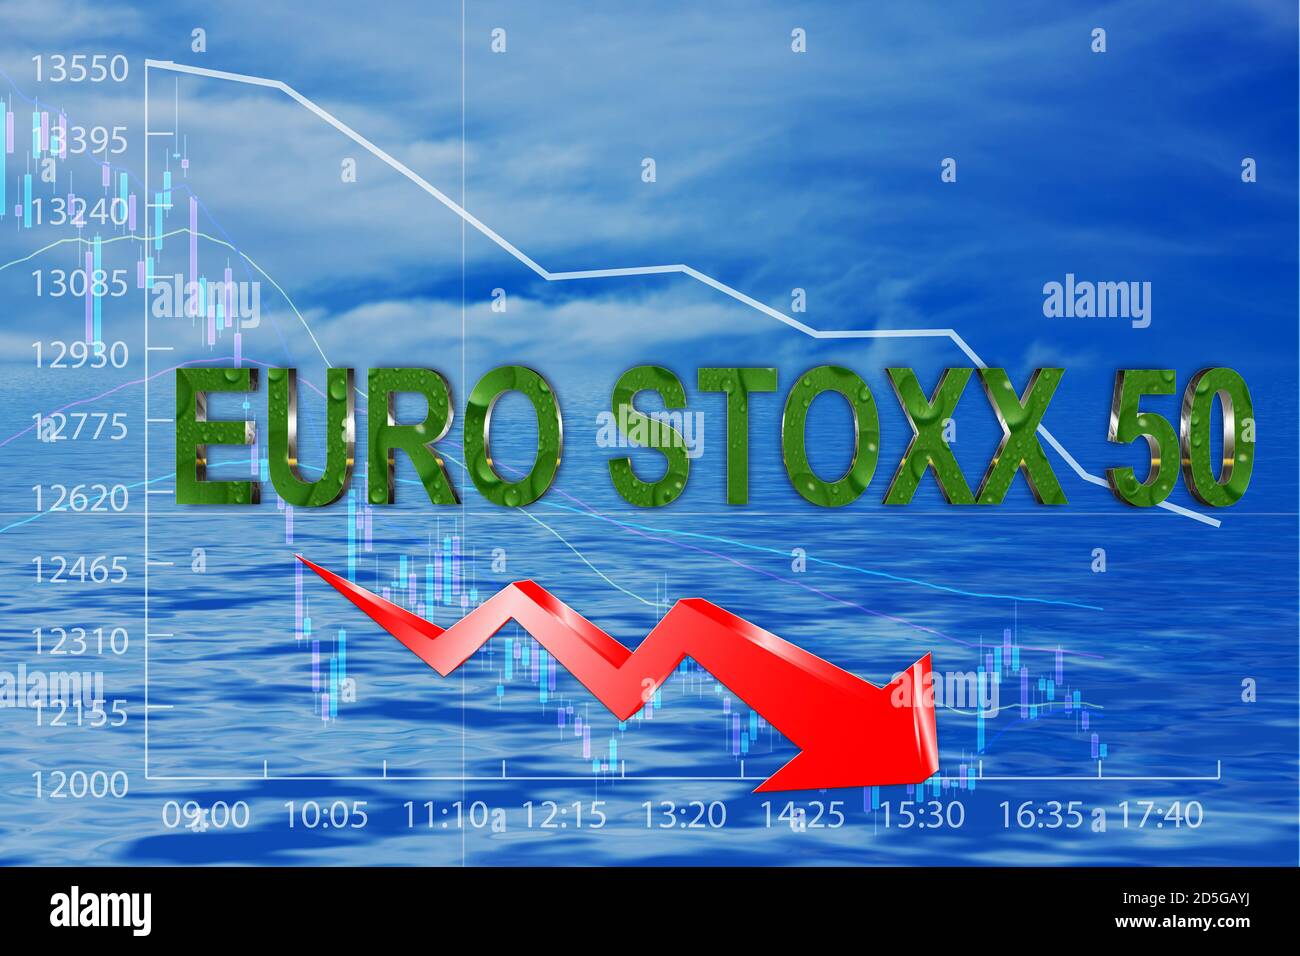 Stock Exchange Euro Stoxx 50 index Stock Photo